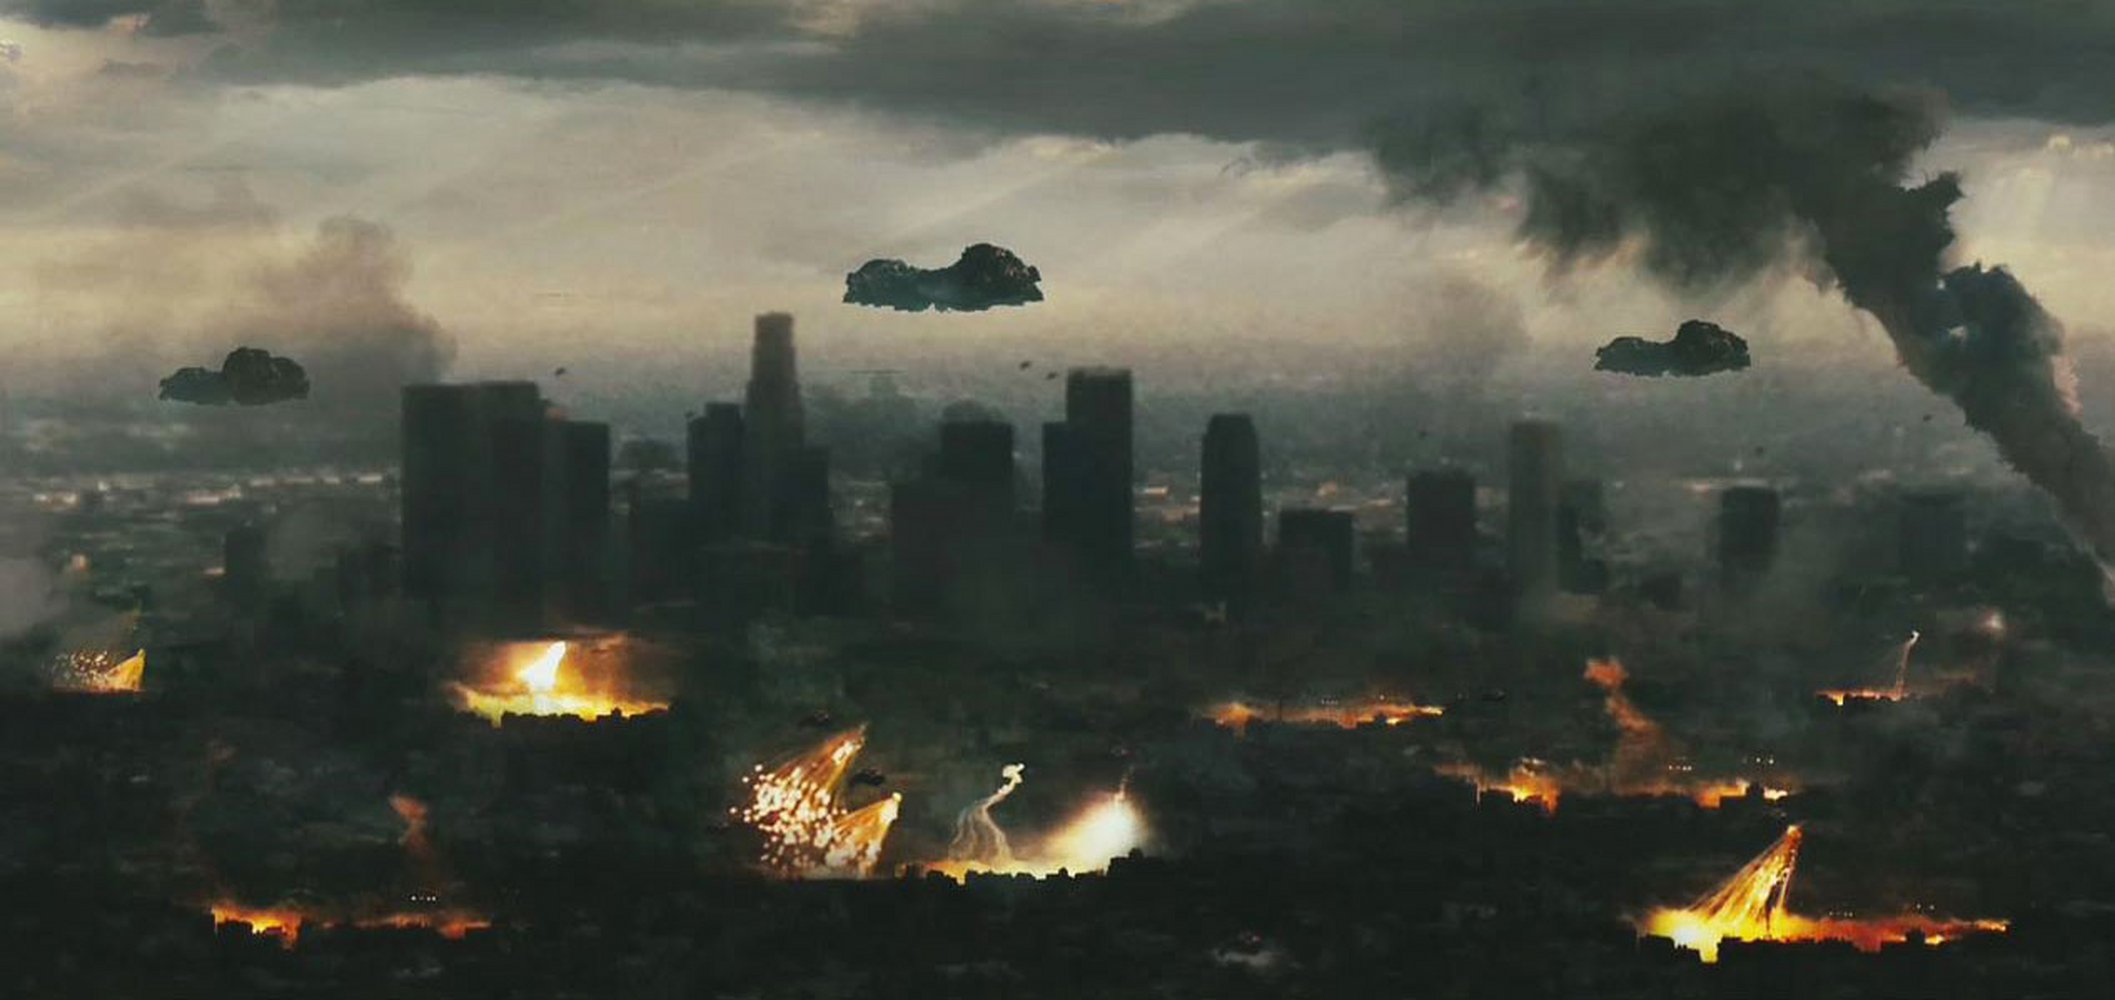 Нападение инопланетян. Инопланетное вторжение битва за Лос-Анджелес.